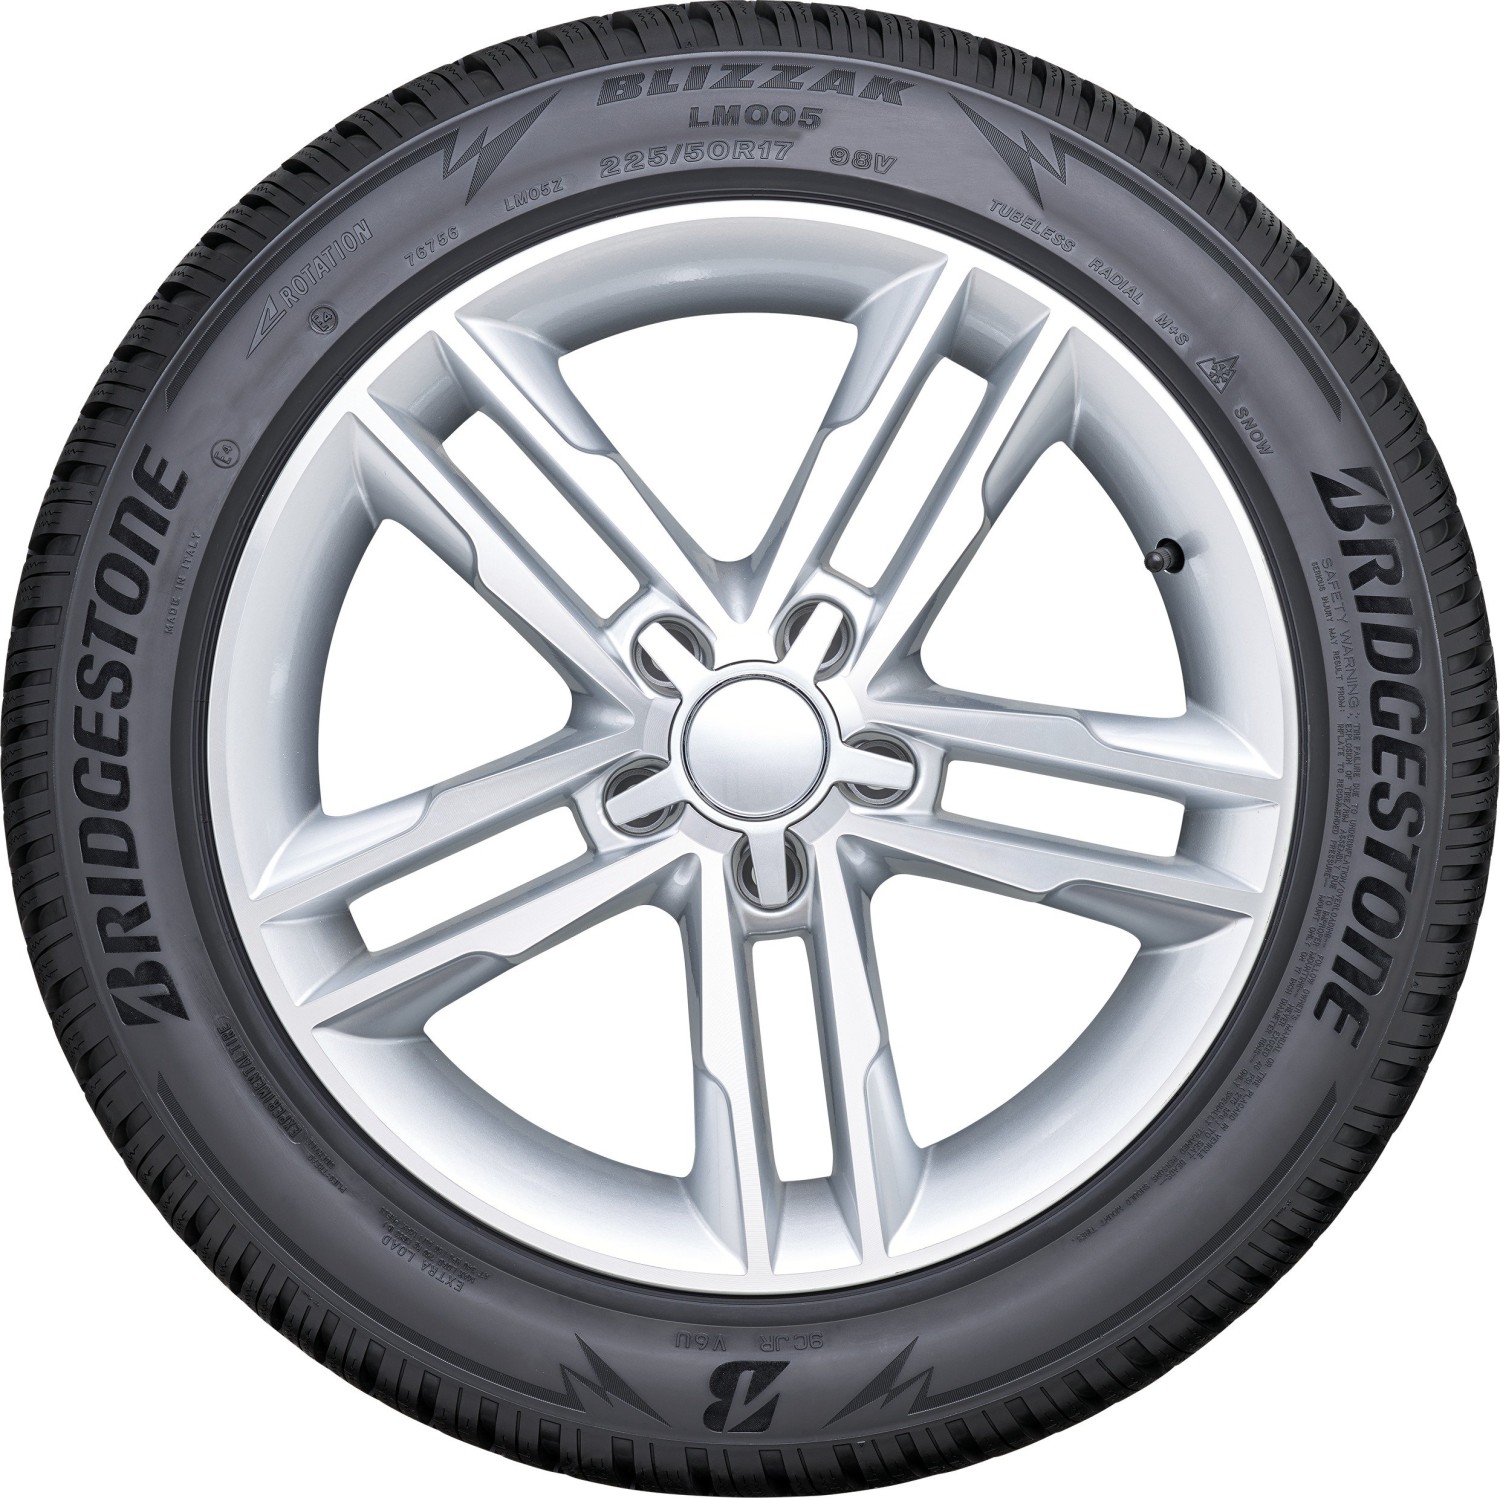 257,19 | € Geizhals ab Bridgestone Preisvergleich (2024) Blizzak R20 XL Deutschland (23416) 255/45 105V LM005